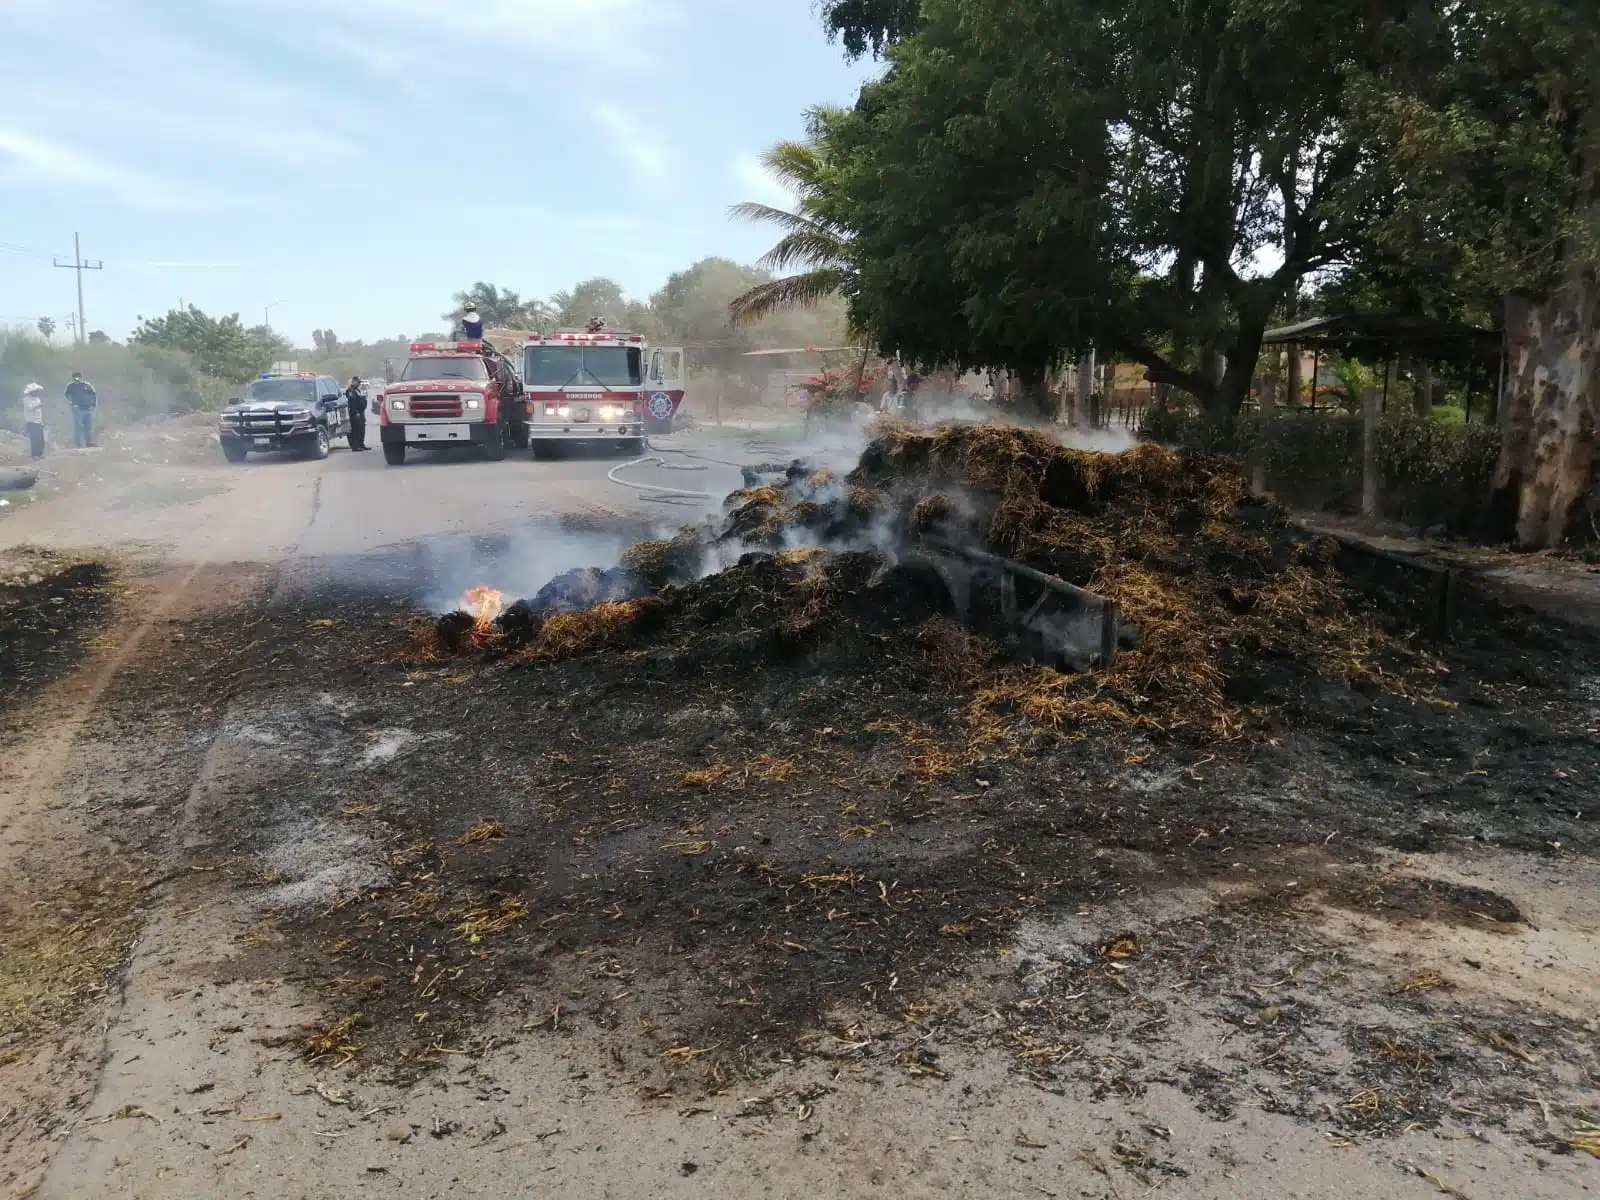 ¡Incendio voraz! Se queman decenas de pacas de frijol; ardieron junto con un remolque en Guasave